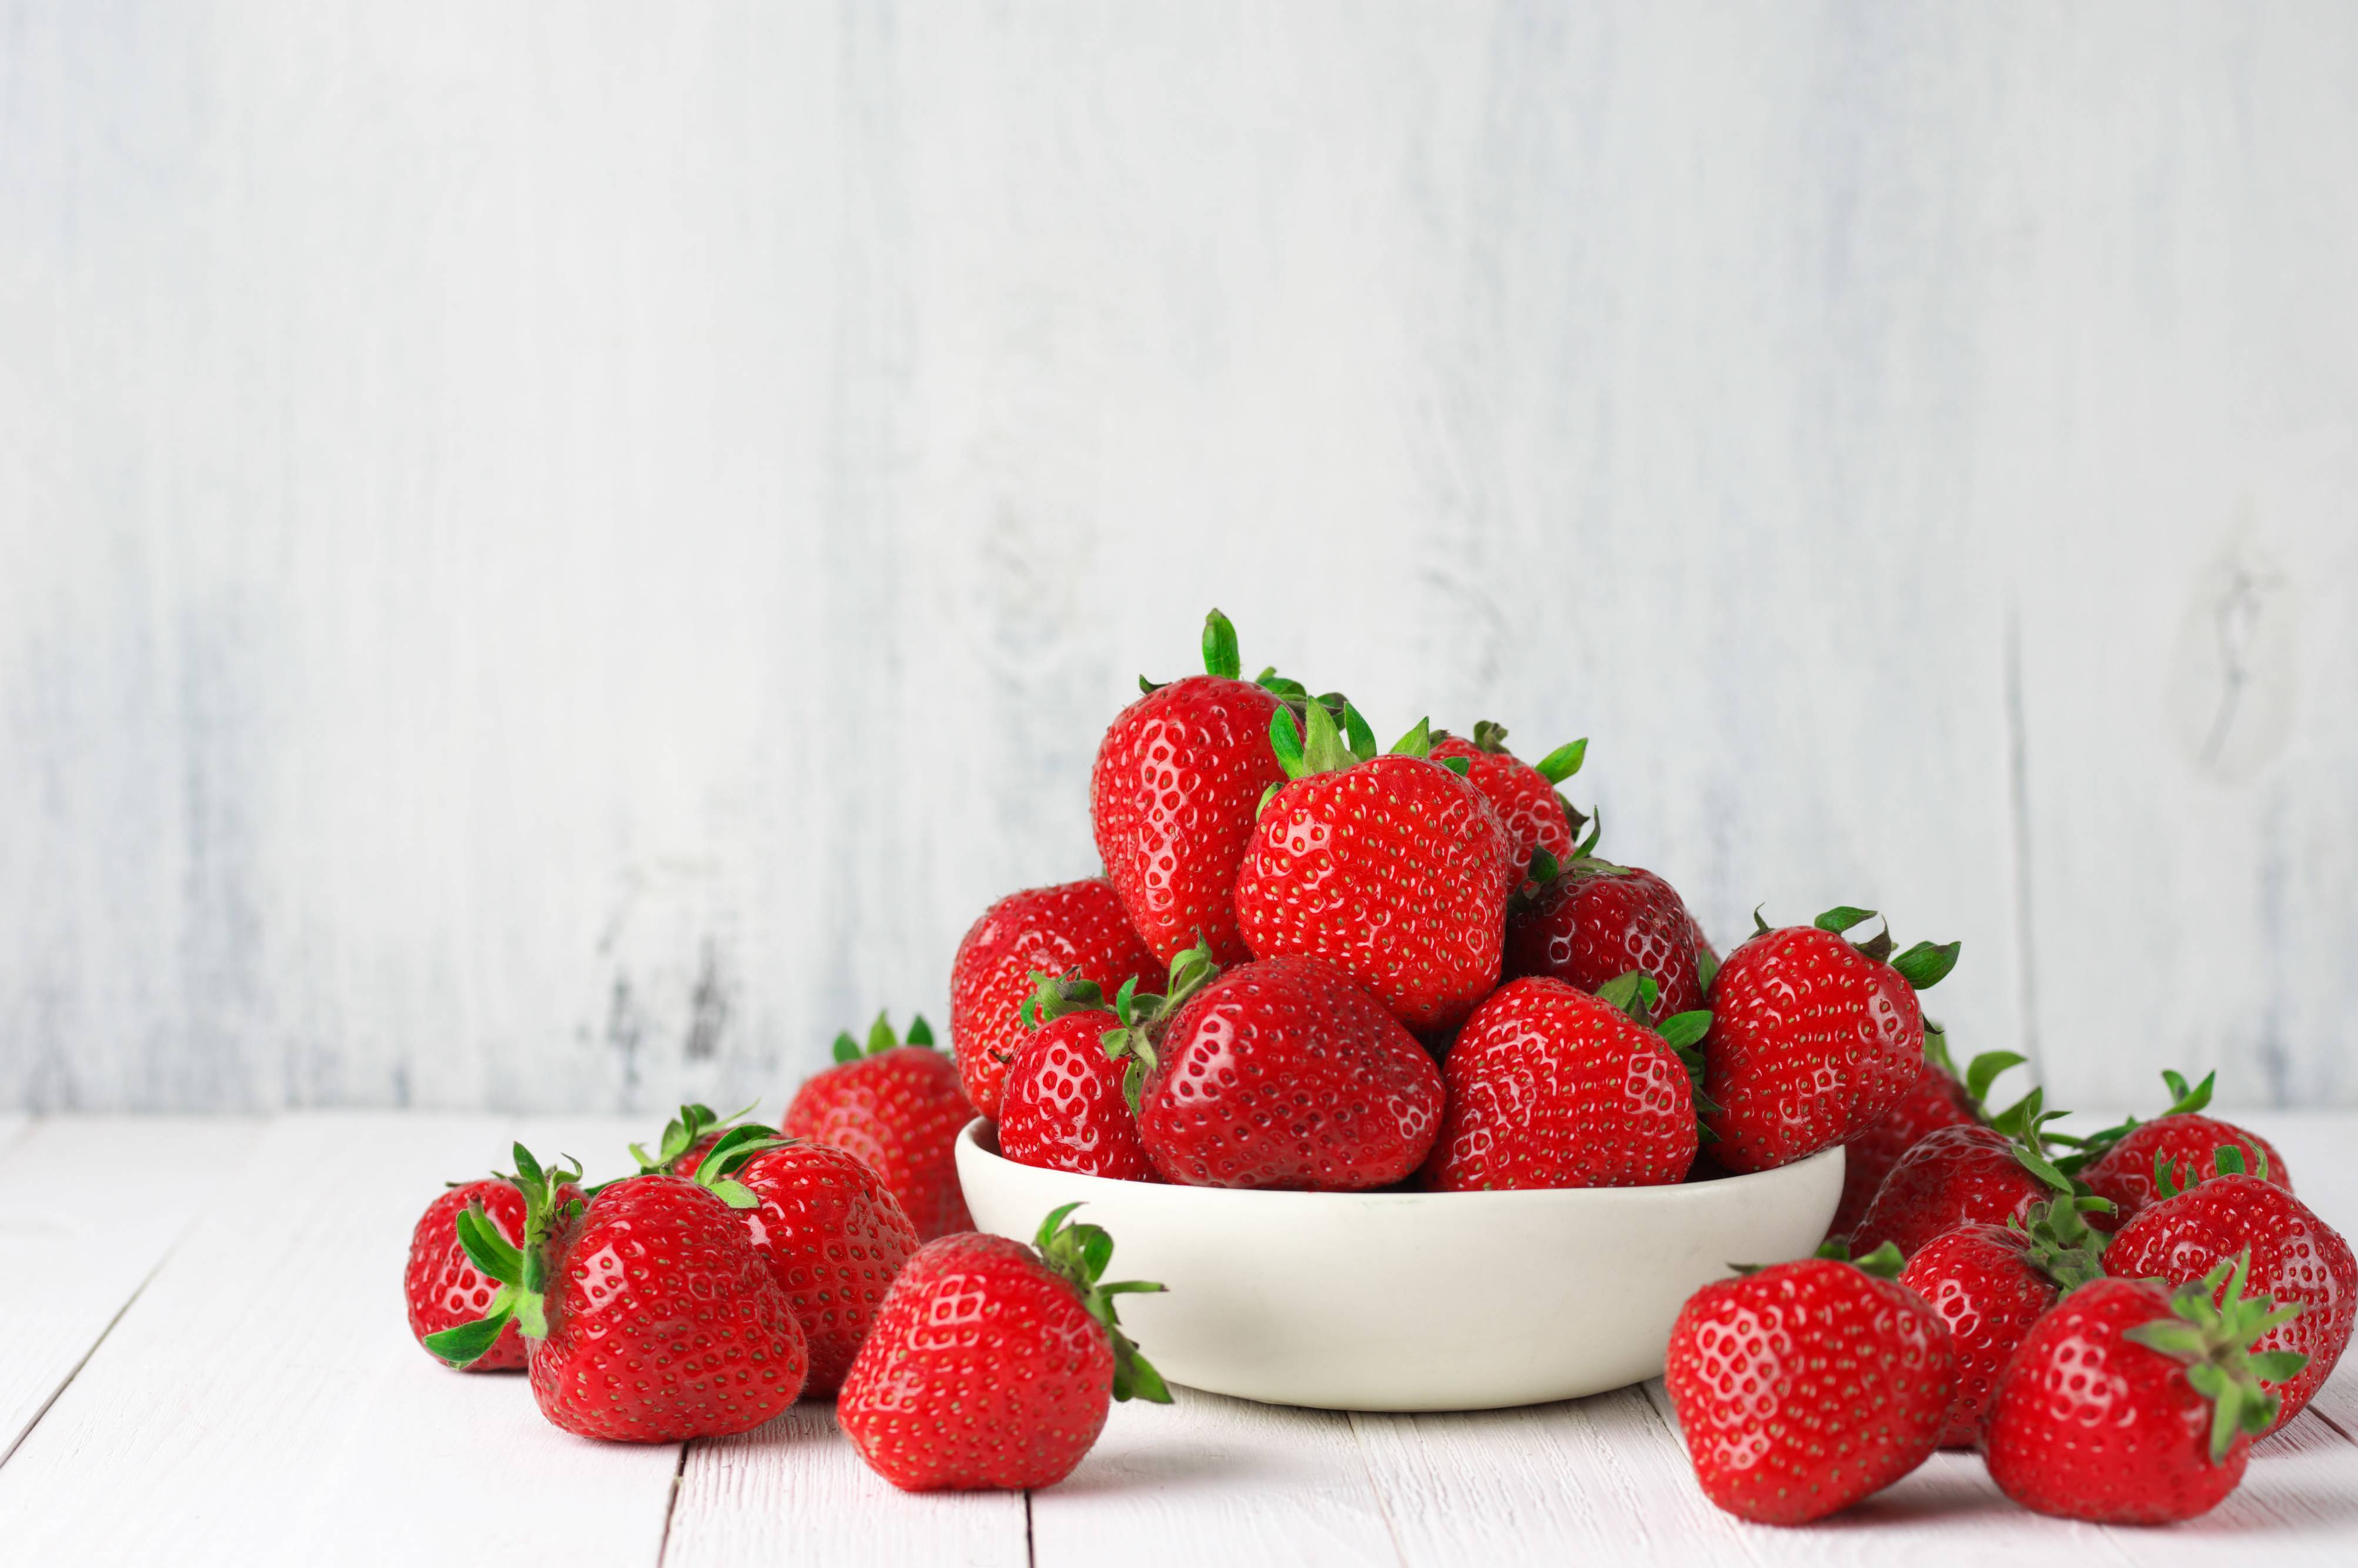 Top 5 health benefits of strawberries